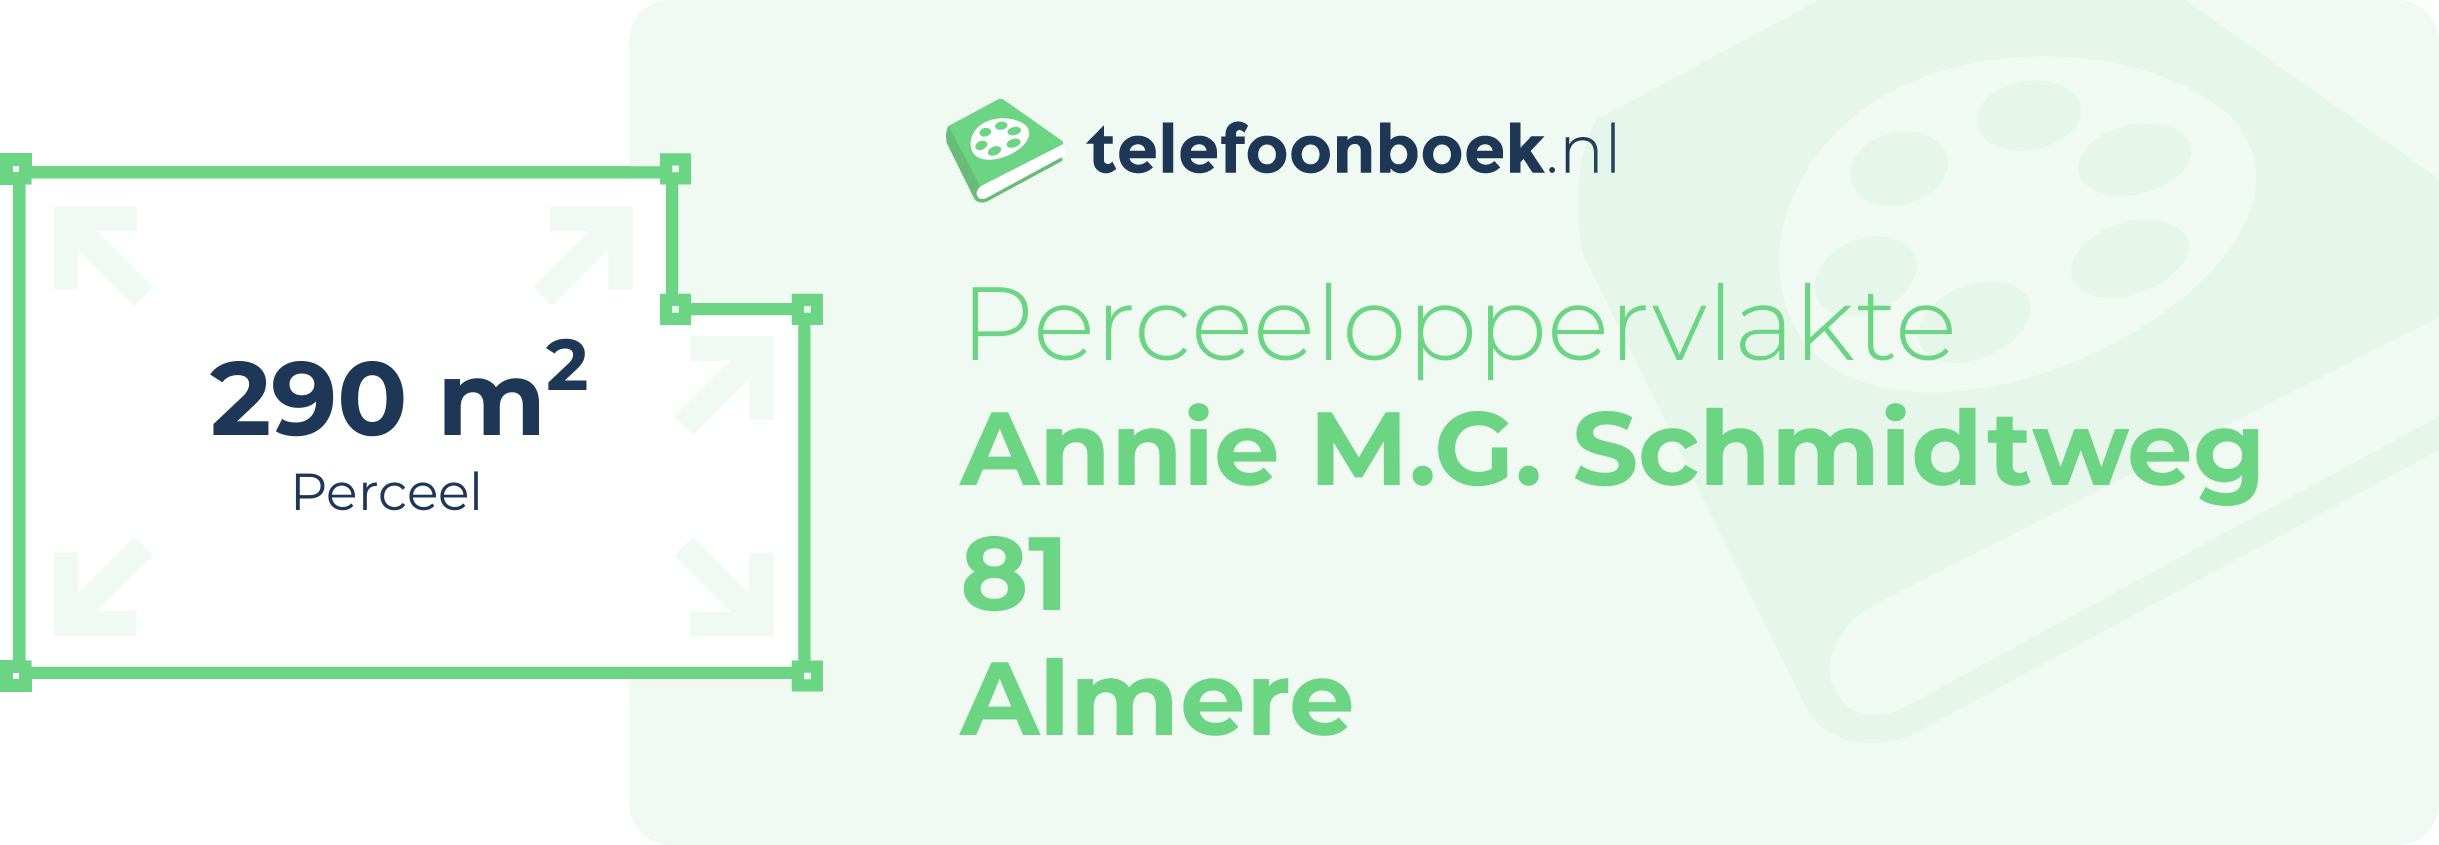 Perceeloppervlakte Annie M.G. Schmidtweg 81 Almere